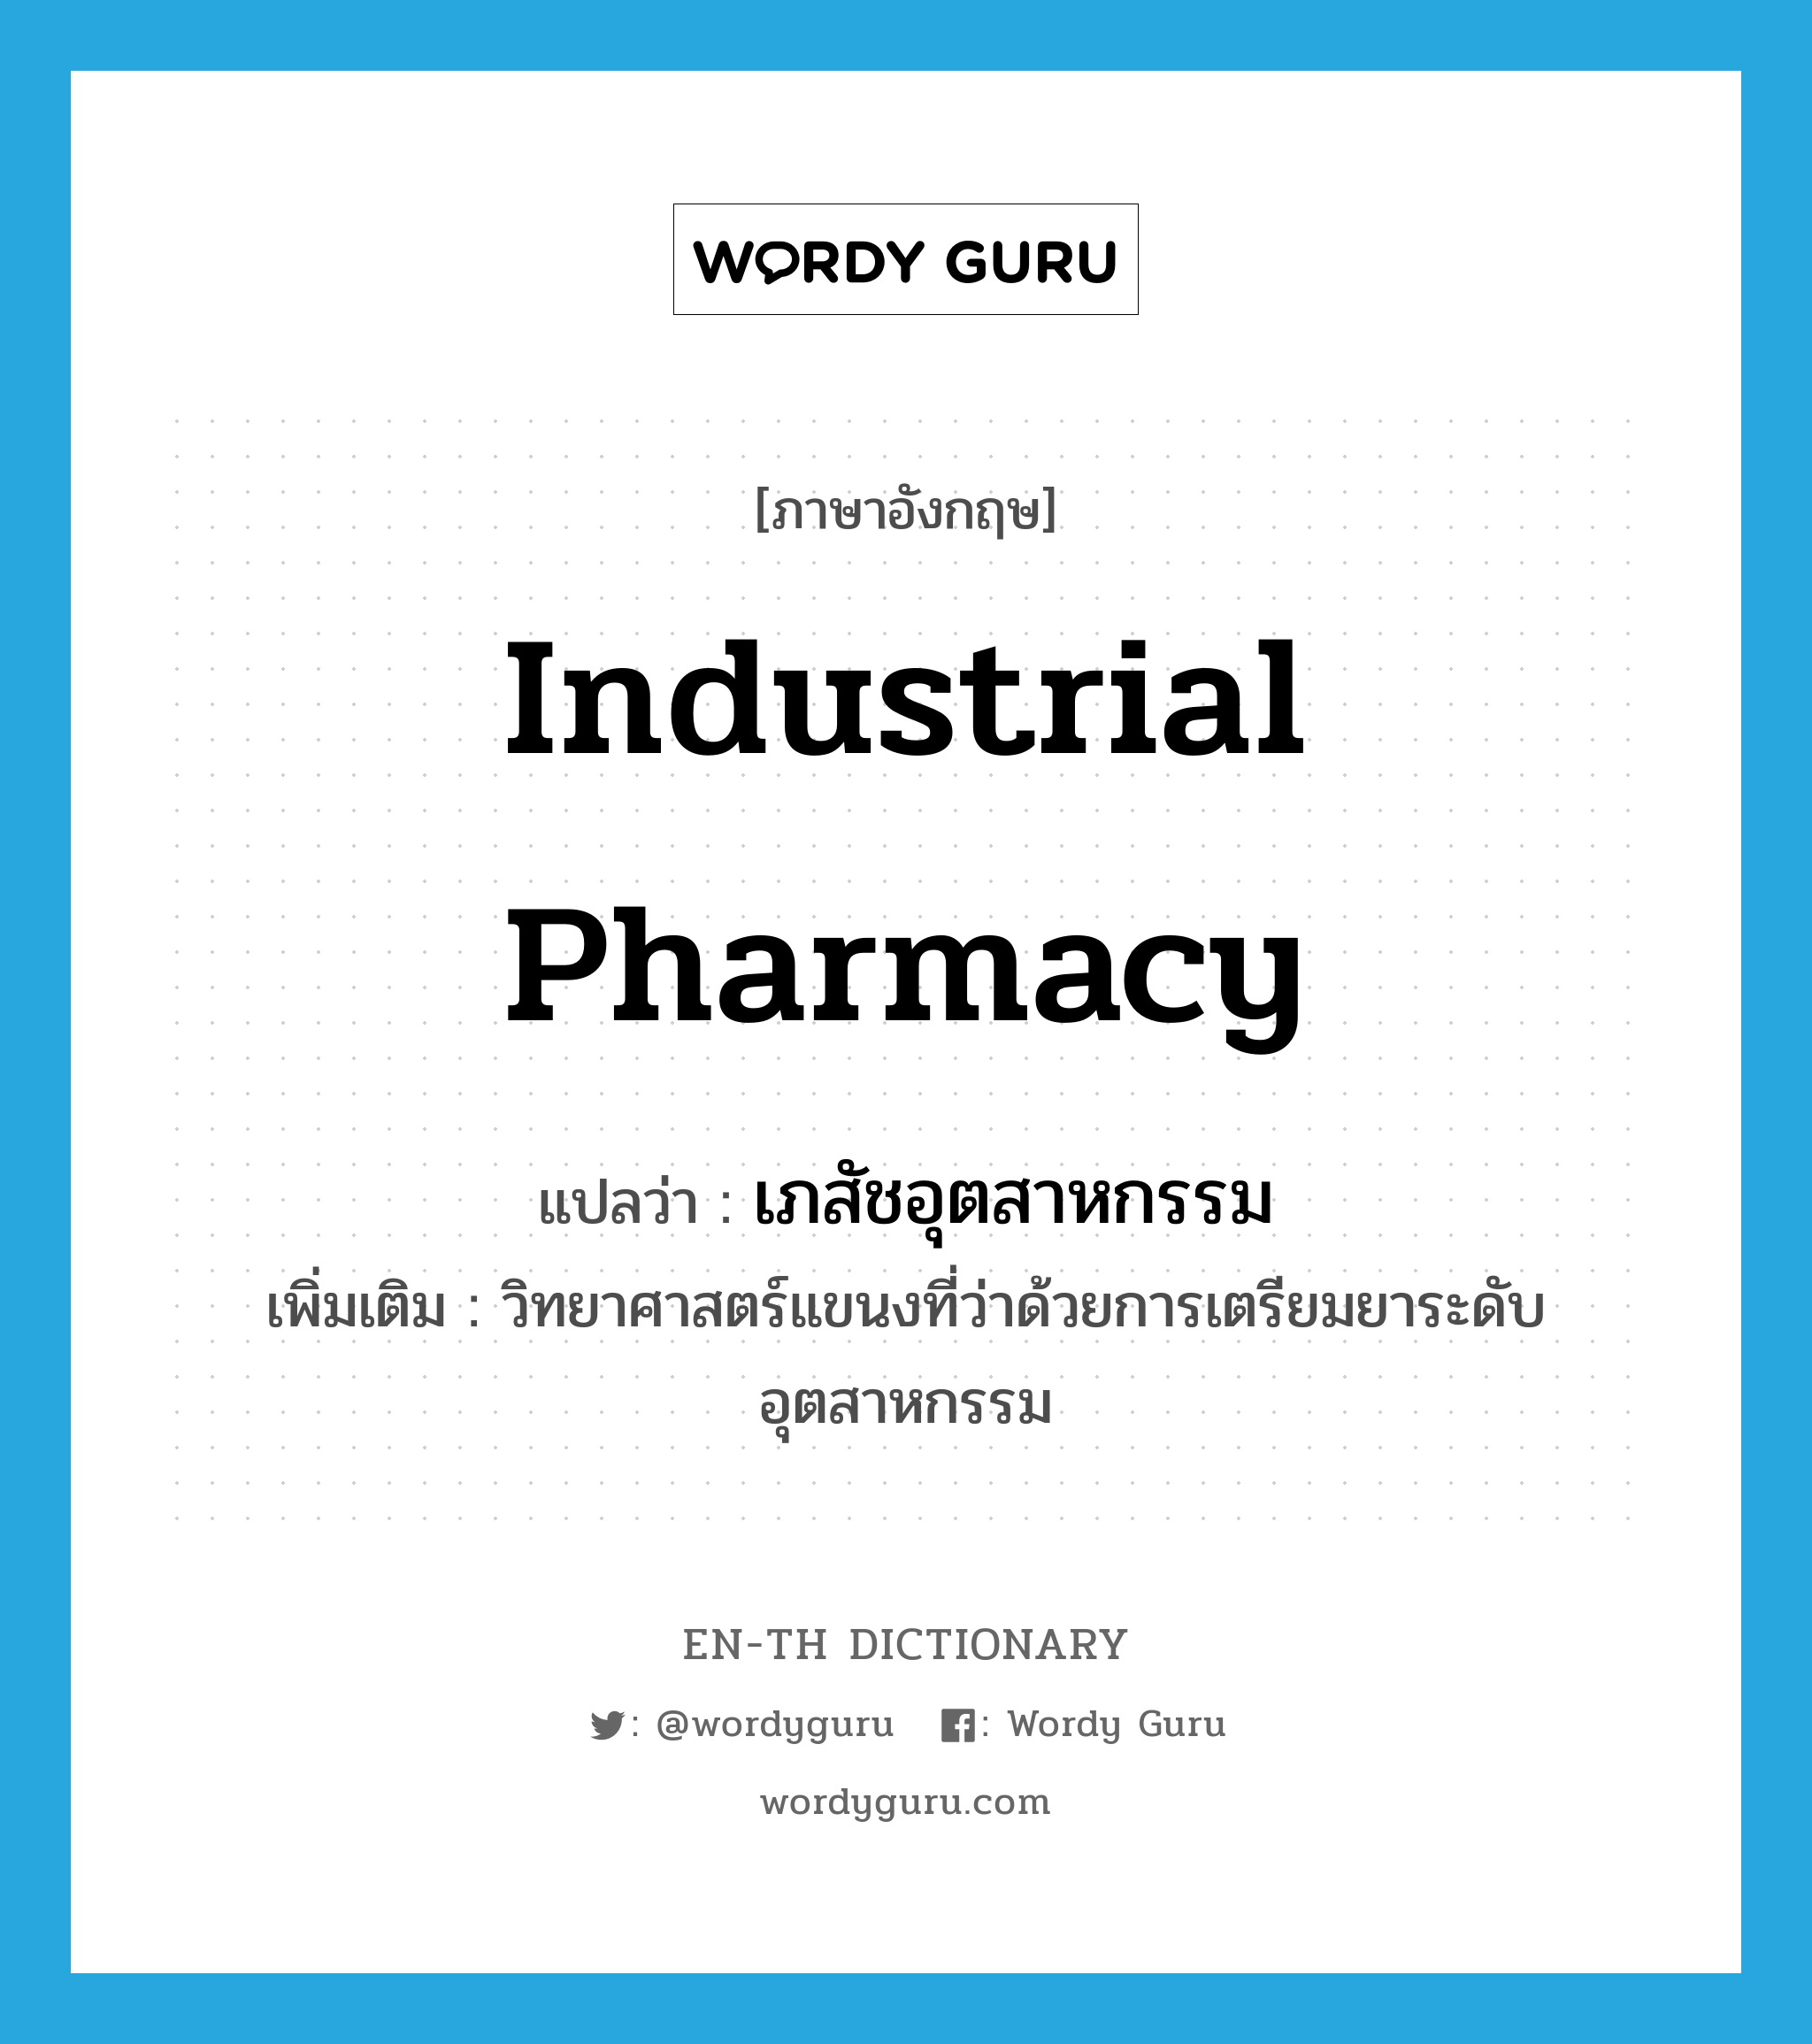 industrial pharmacy แปลว่า?, คำศัพท์ภาษาอังกฤษ industrial pharmacy แปลว่า เภสัชอุตสาหกรรม ประเภท N เพิ่มเติม วิทยาศาสตร์แขนงที่ว่าด้วยการเตรียมยาระดับอุตสาหกรรม หมวด N